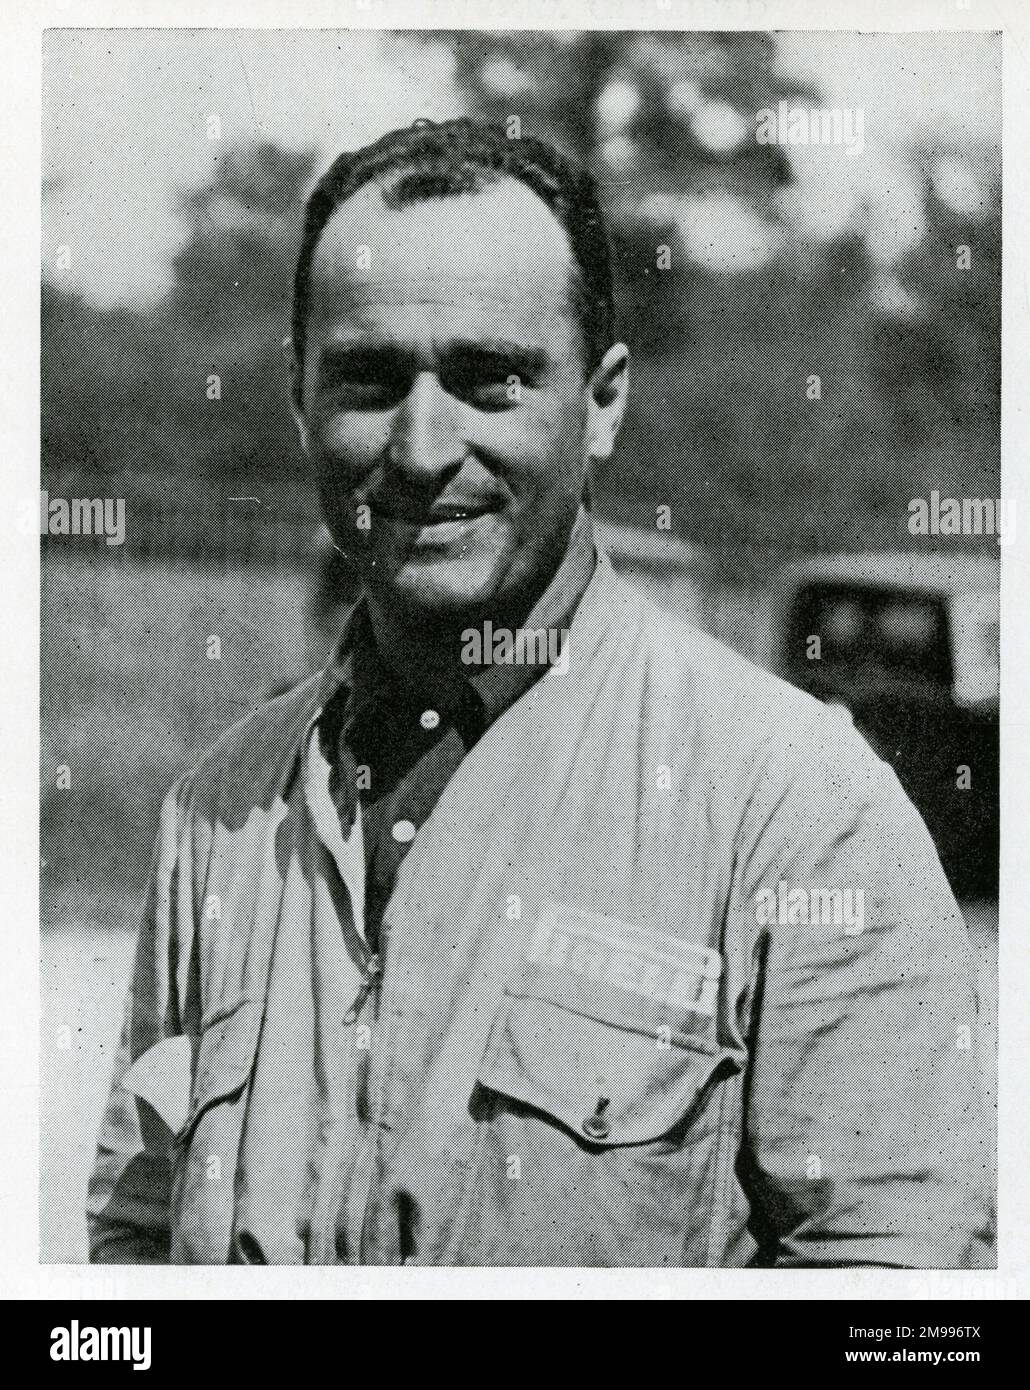 Luigi Fagioli, motor racing driver. Stock Photo